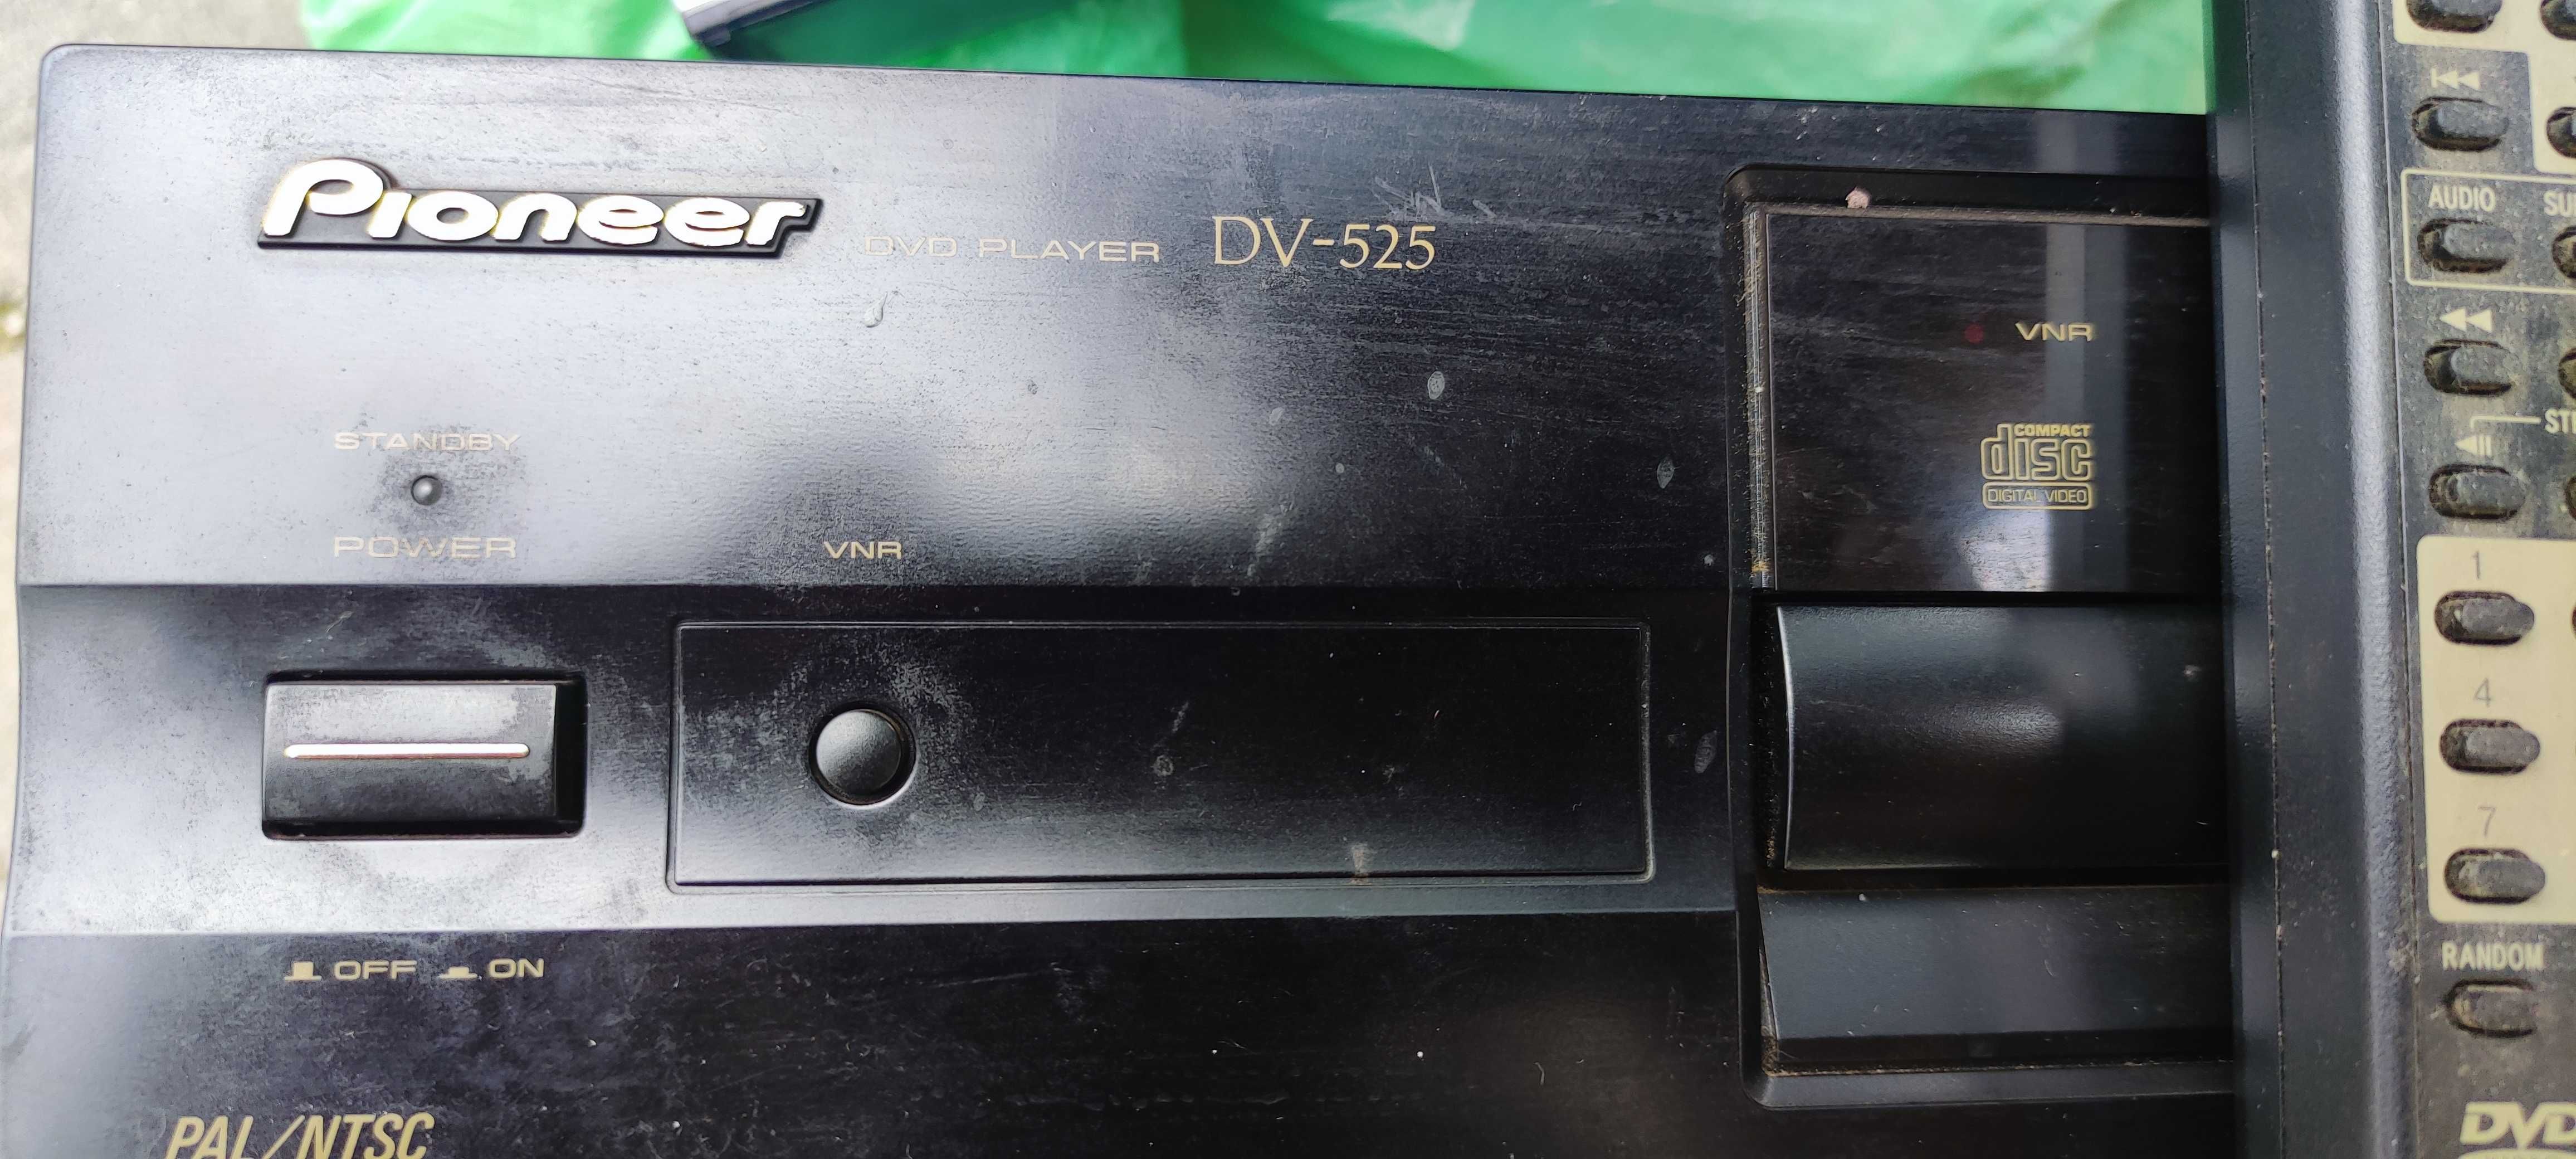 odtwarzacz dvd pioneer dv-525 plus kasety